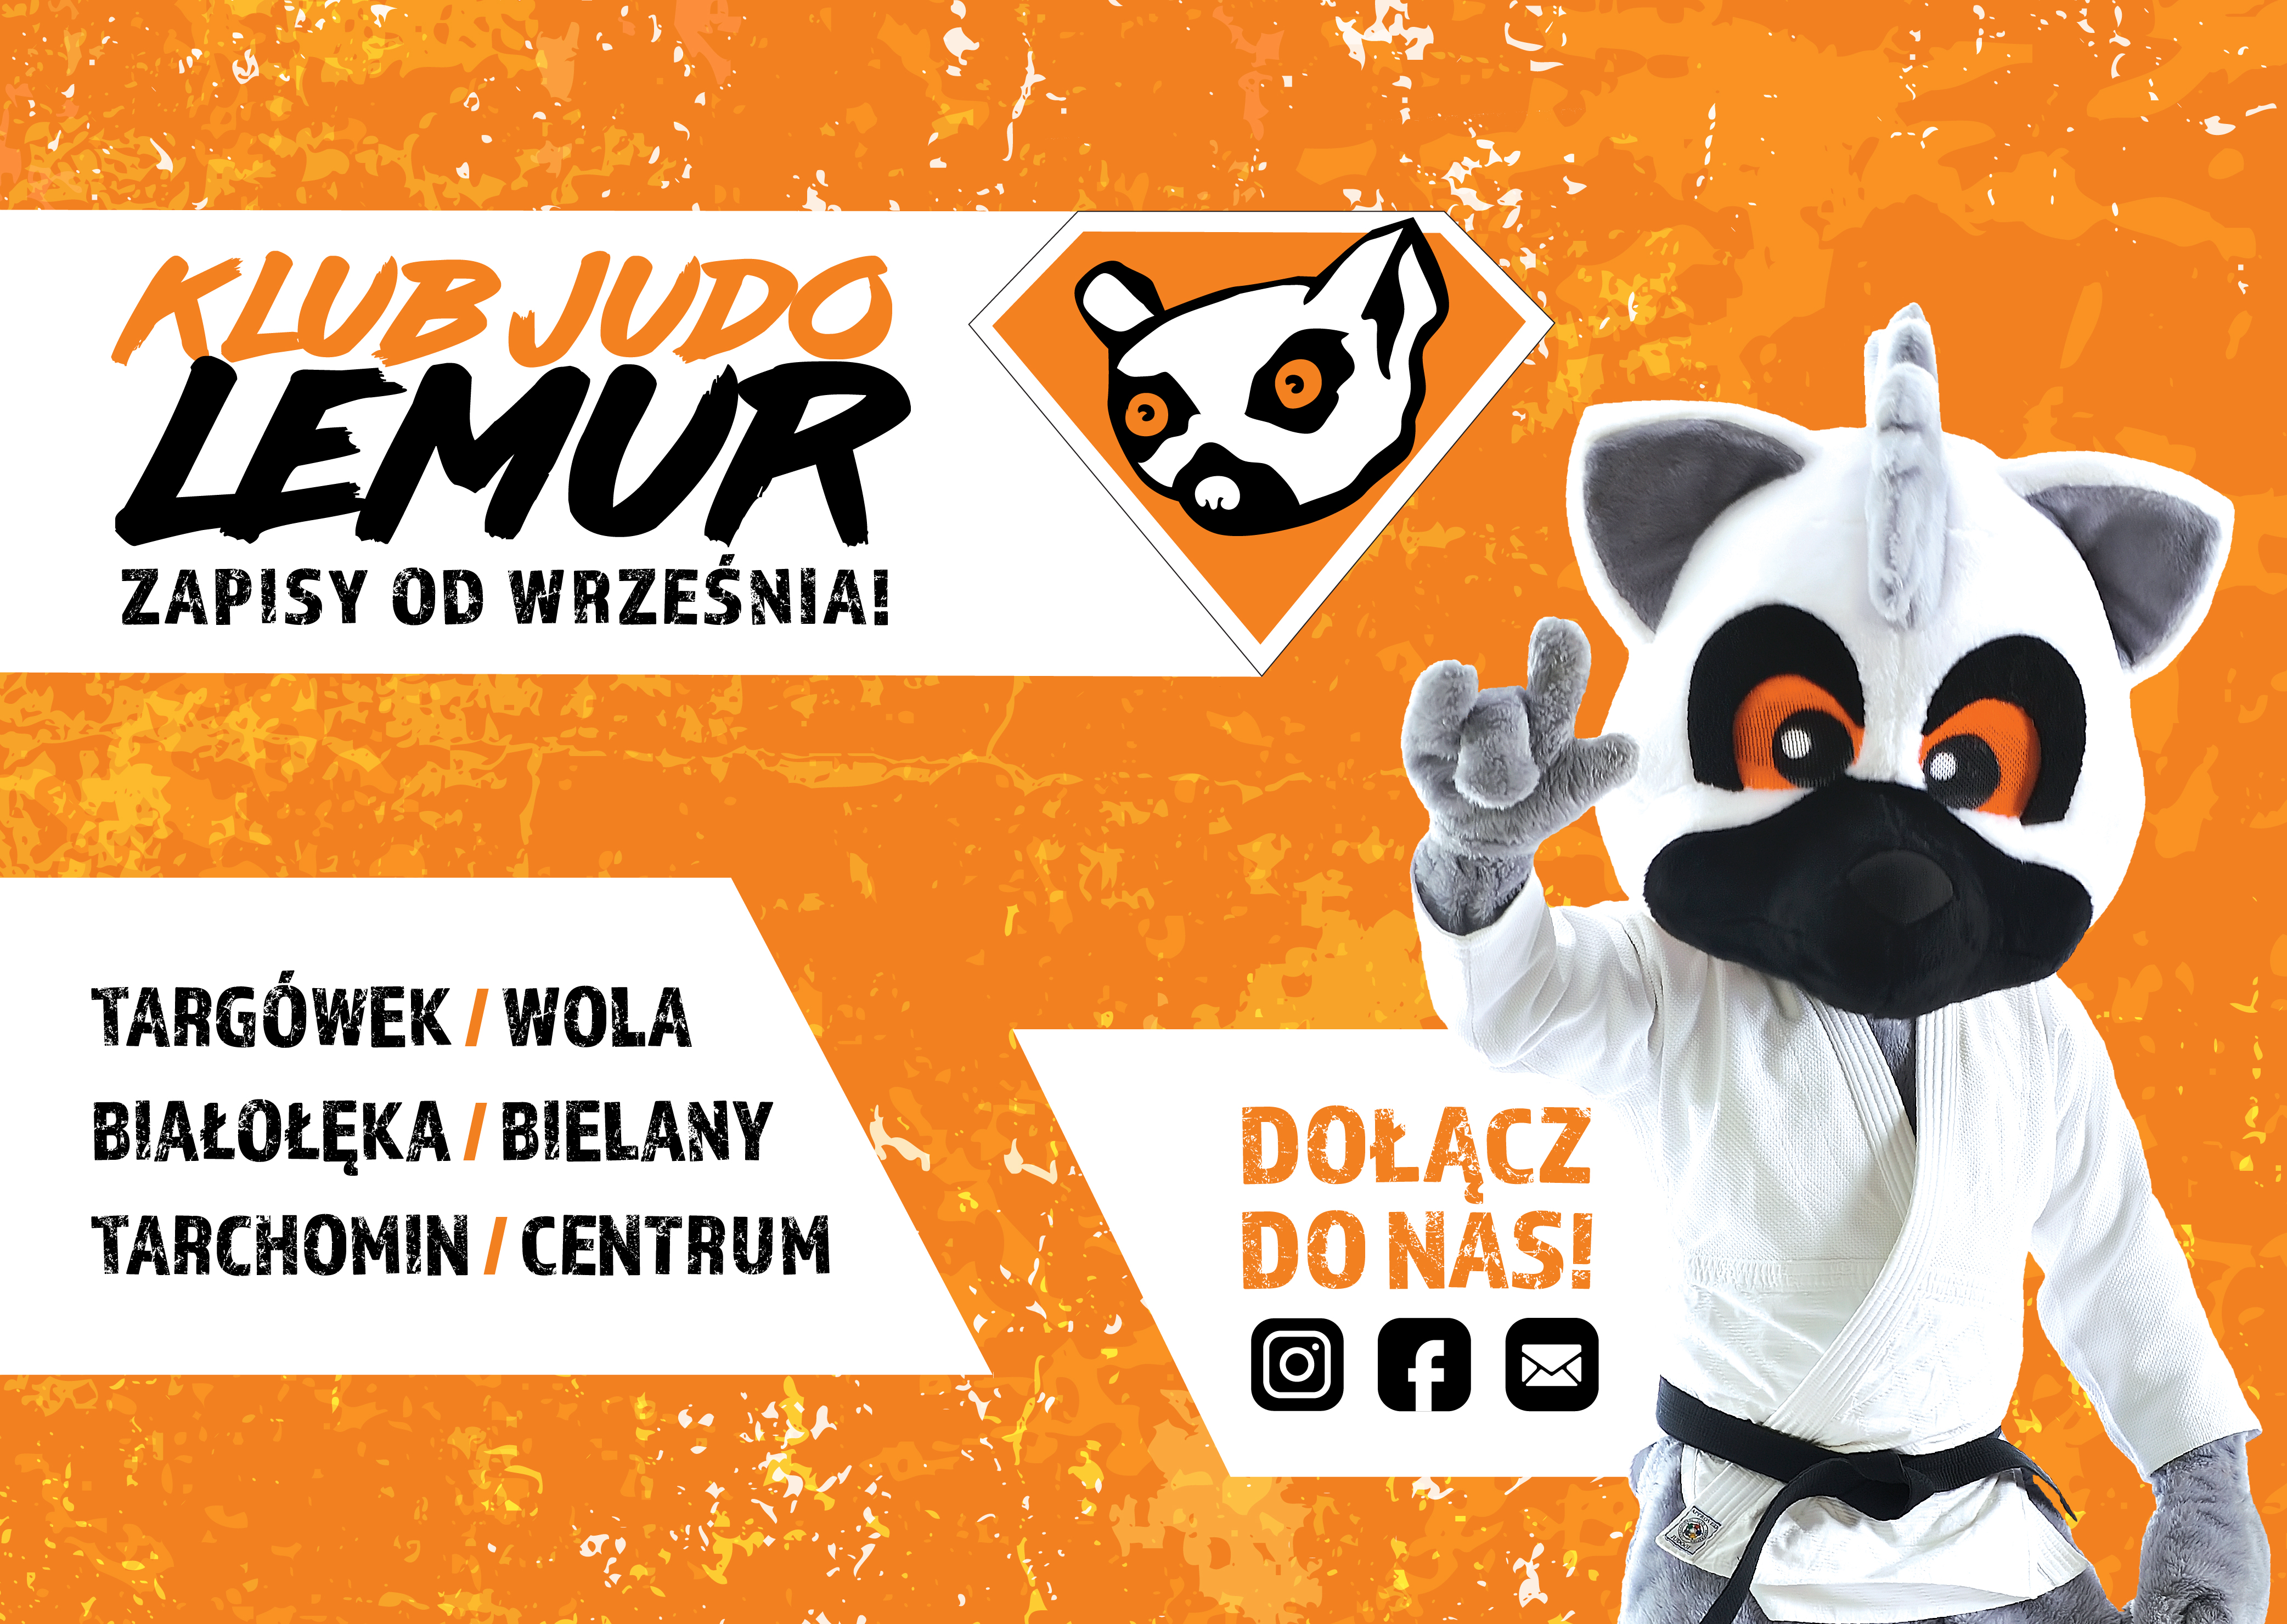 Zapraszam wszystkich entuzjastów sztuk walki do naszego klubu judo - Judo Lemur, gdzie możecie dołączyć do wspaniałej drużyny w Warszawie! Jako trener i zawodnik jednocześnie, wiem jak ważne jest to aby trenować w dobrze zorganizowanym, pełnym pasji klubie jakim jest lemur, dlatego serdecznie zapraszam na judo!